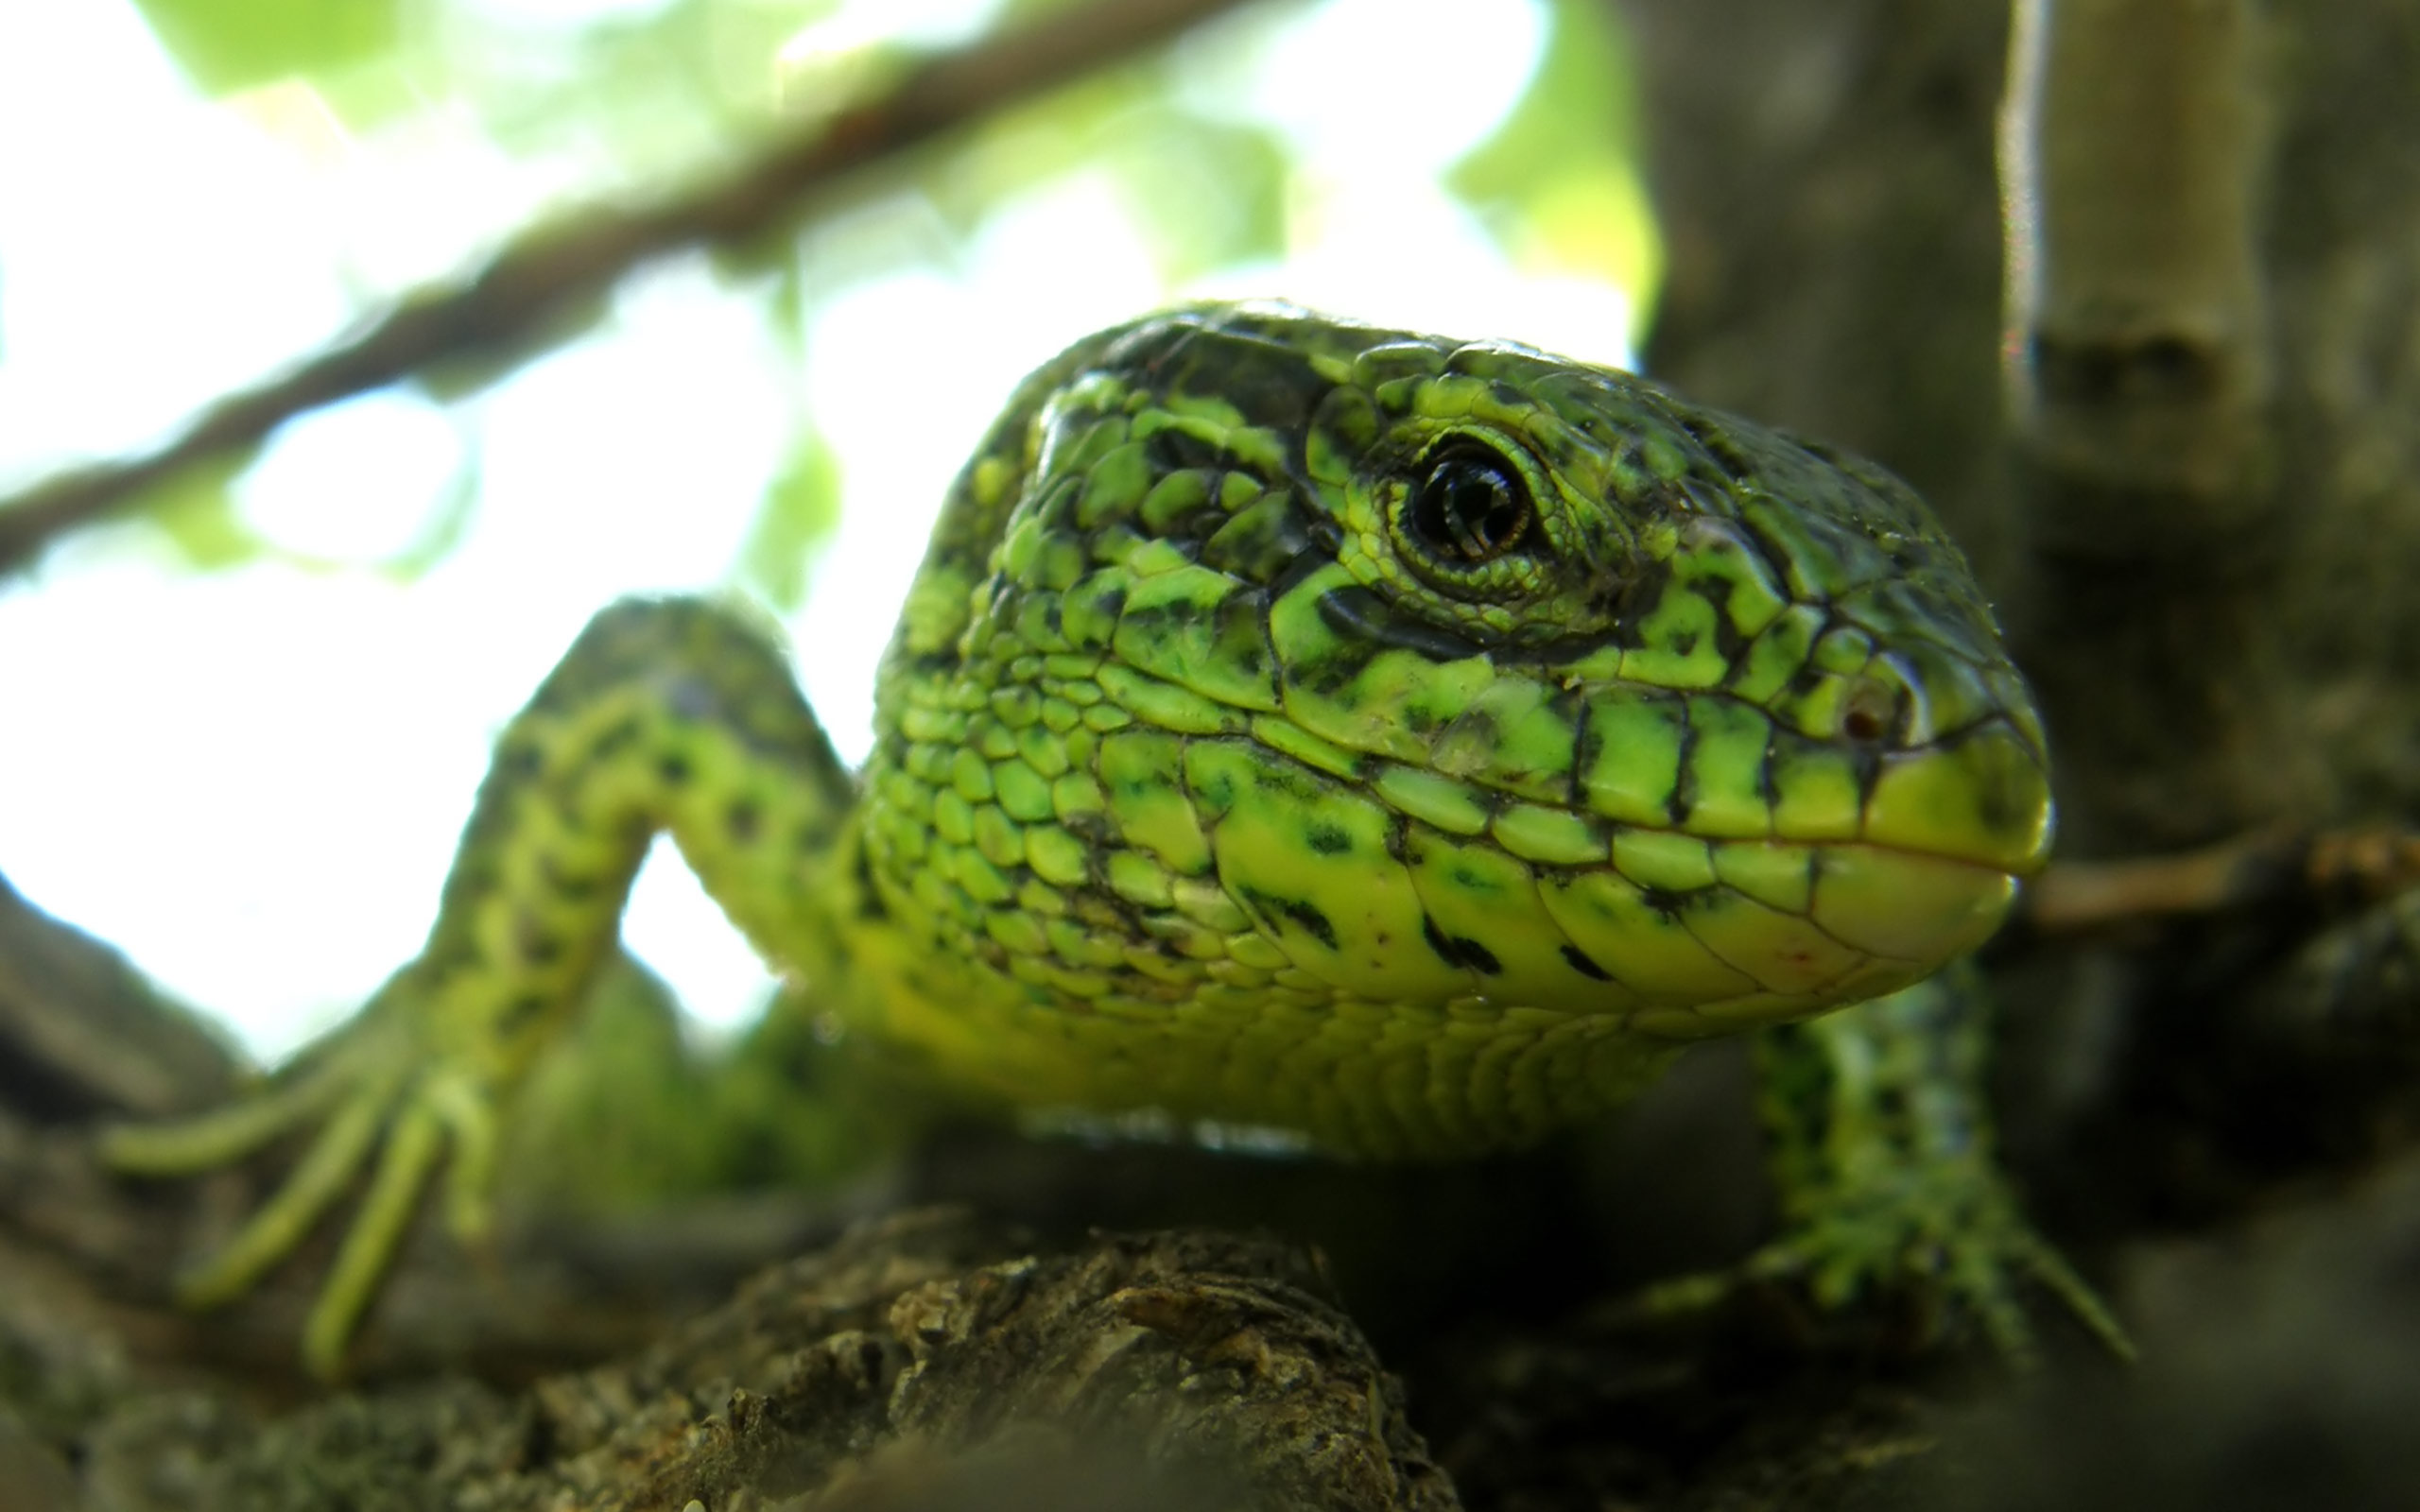 Descarga gratuita de fondo de pantalla para móvil de Lagarto, Reptiles, Animales.